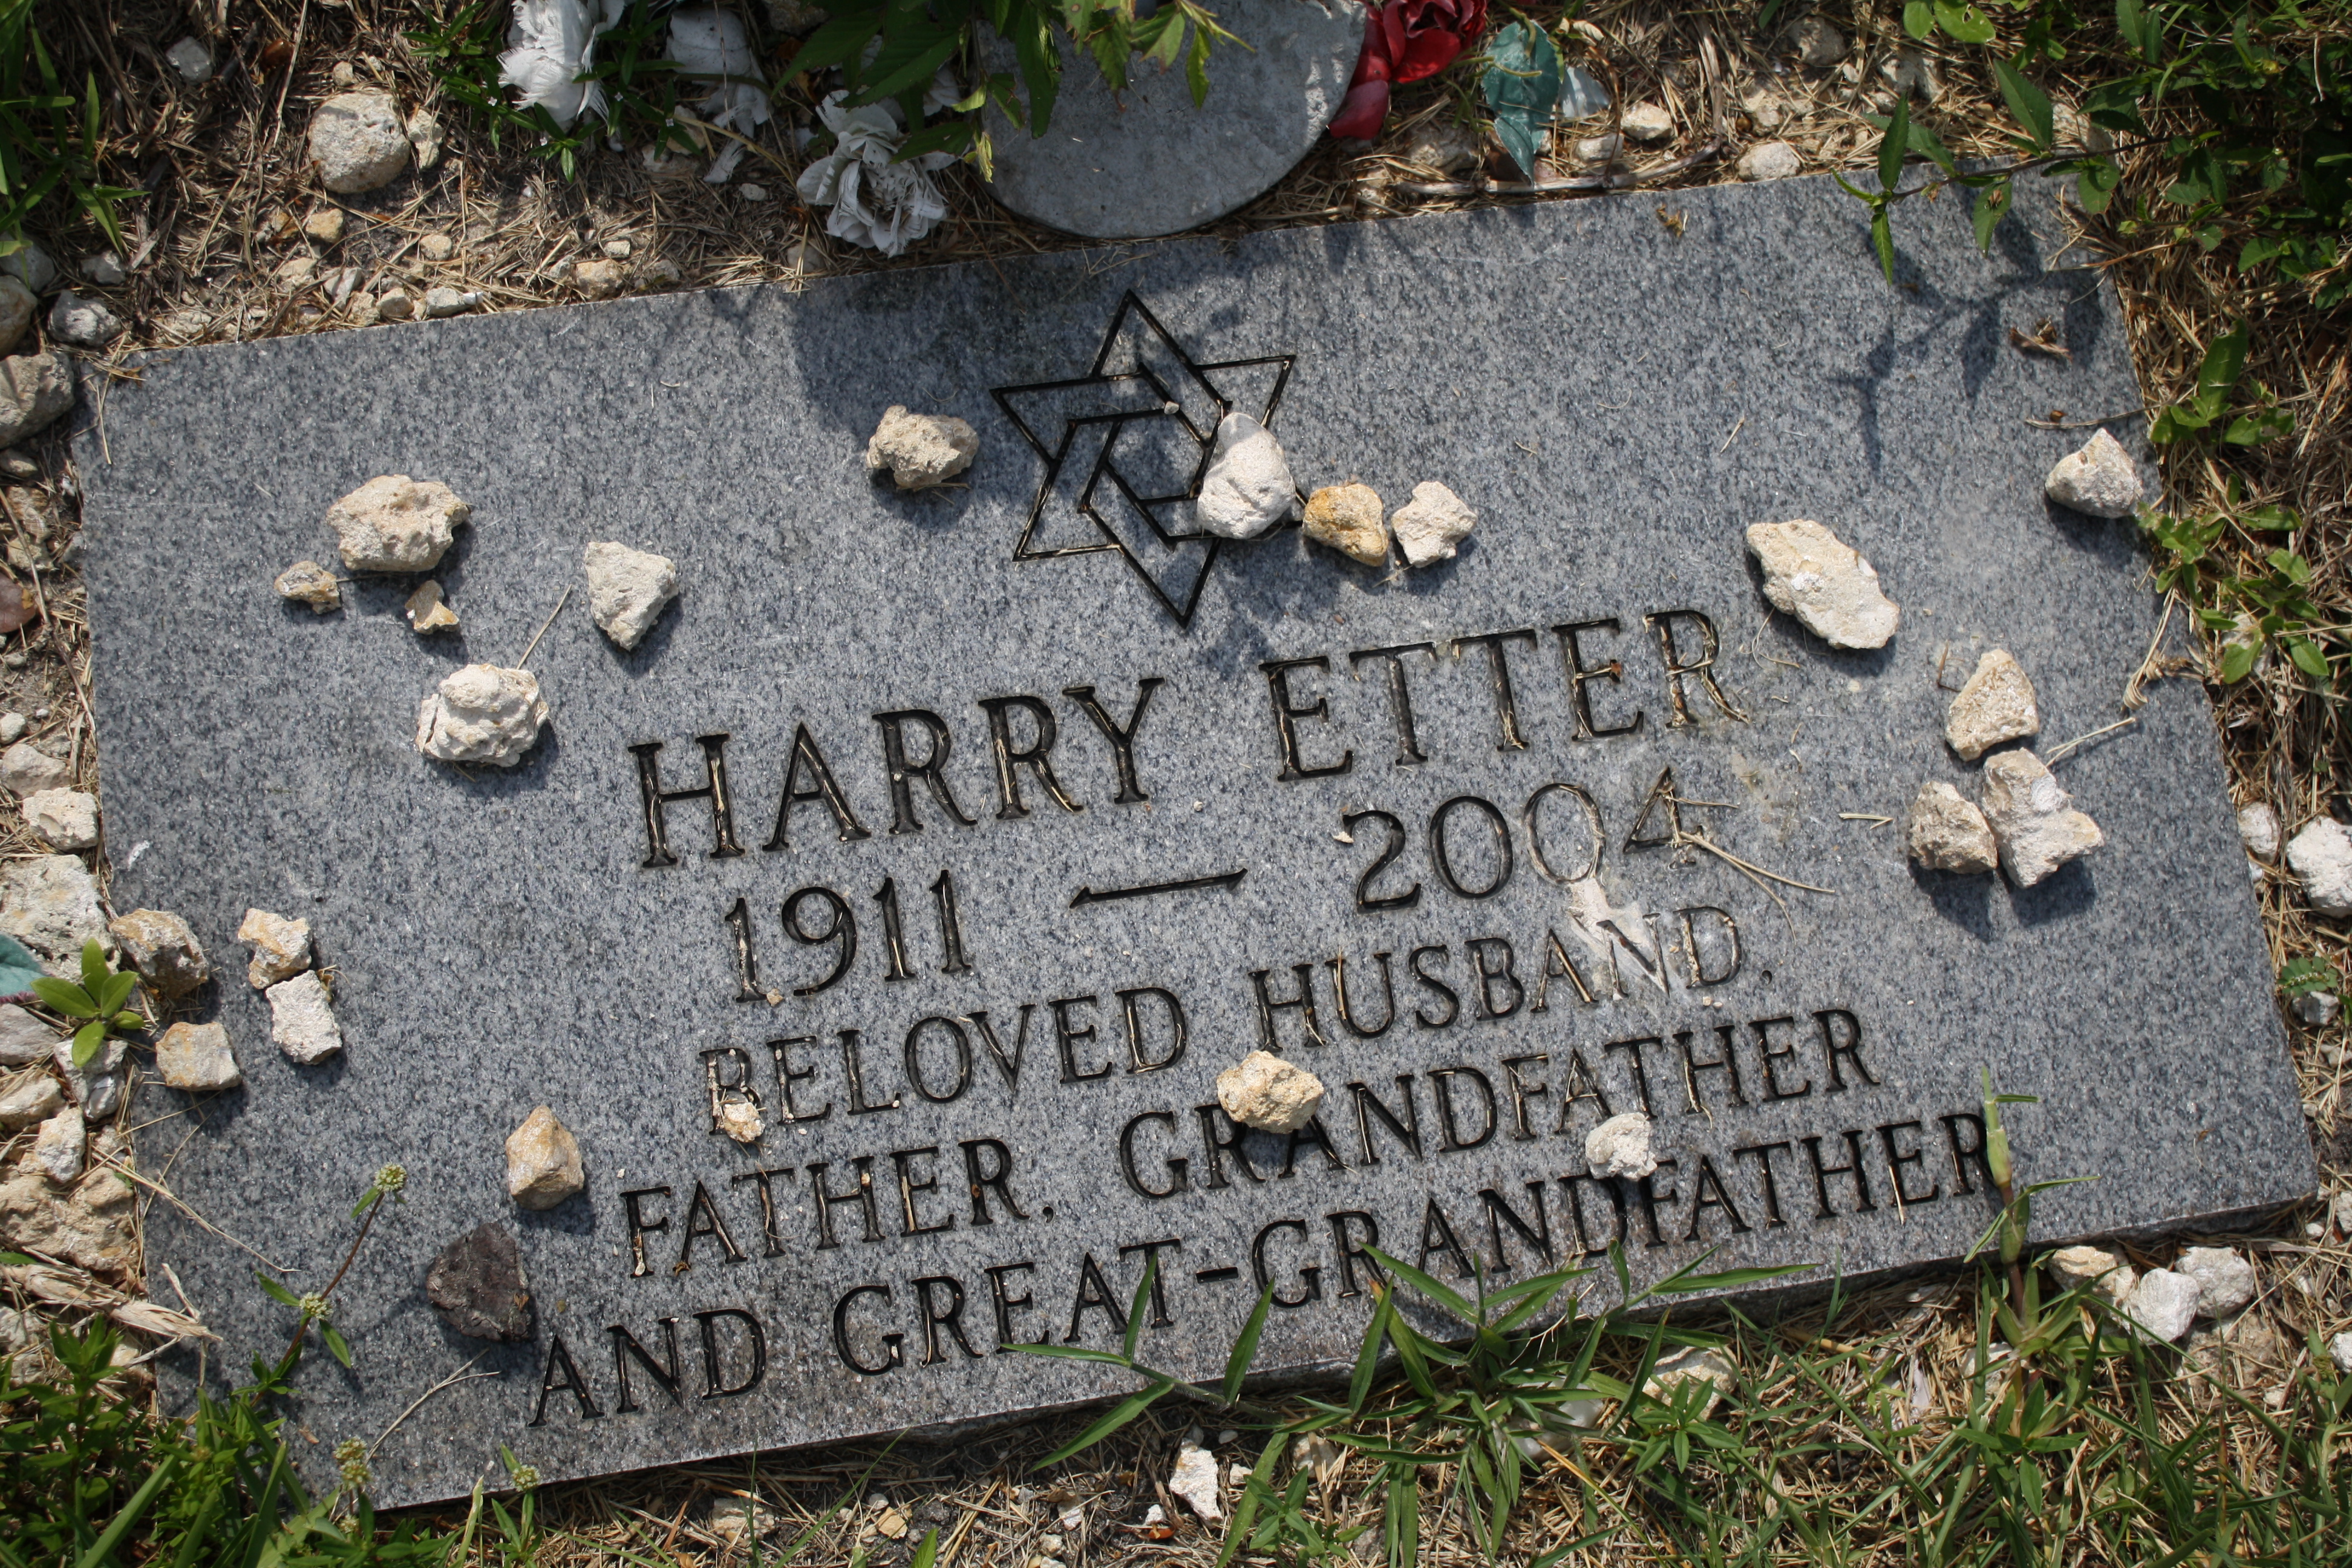 Harry Etter